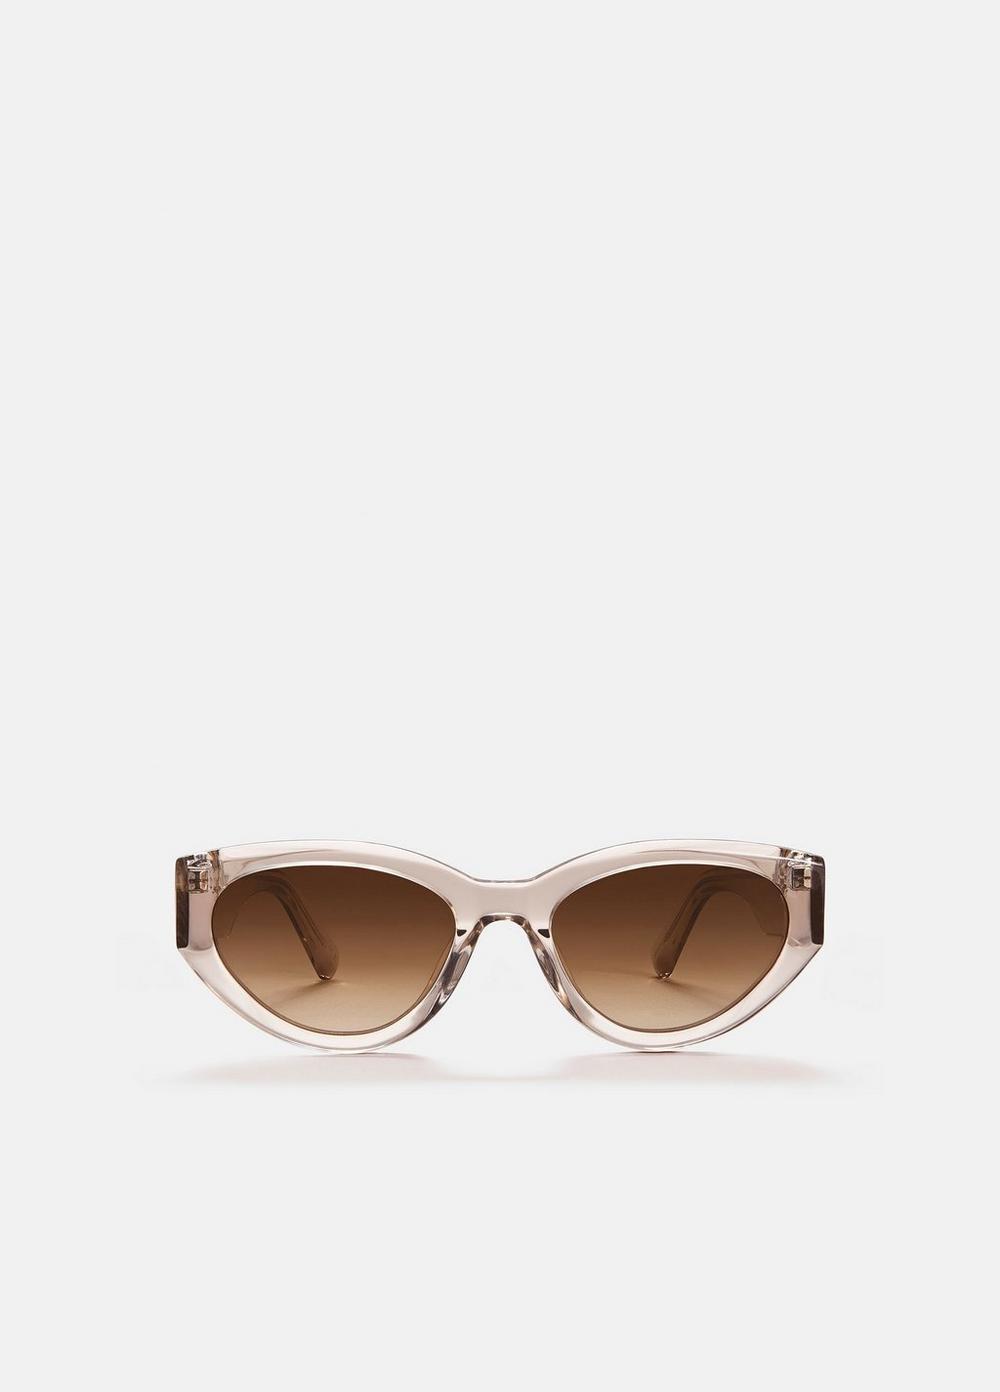 Chimi 06 Sunglasses, White Vince